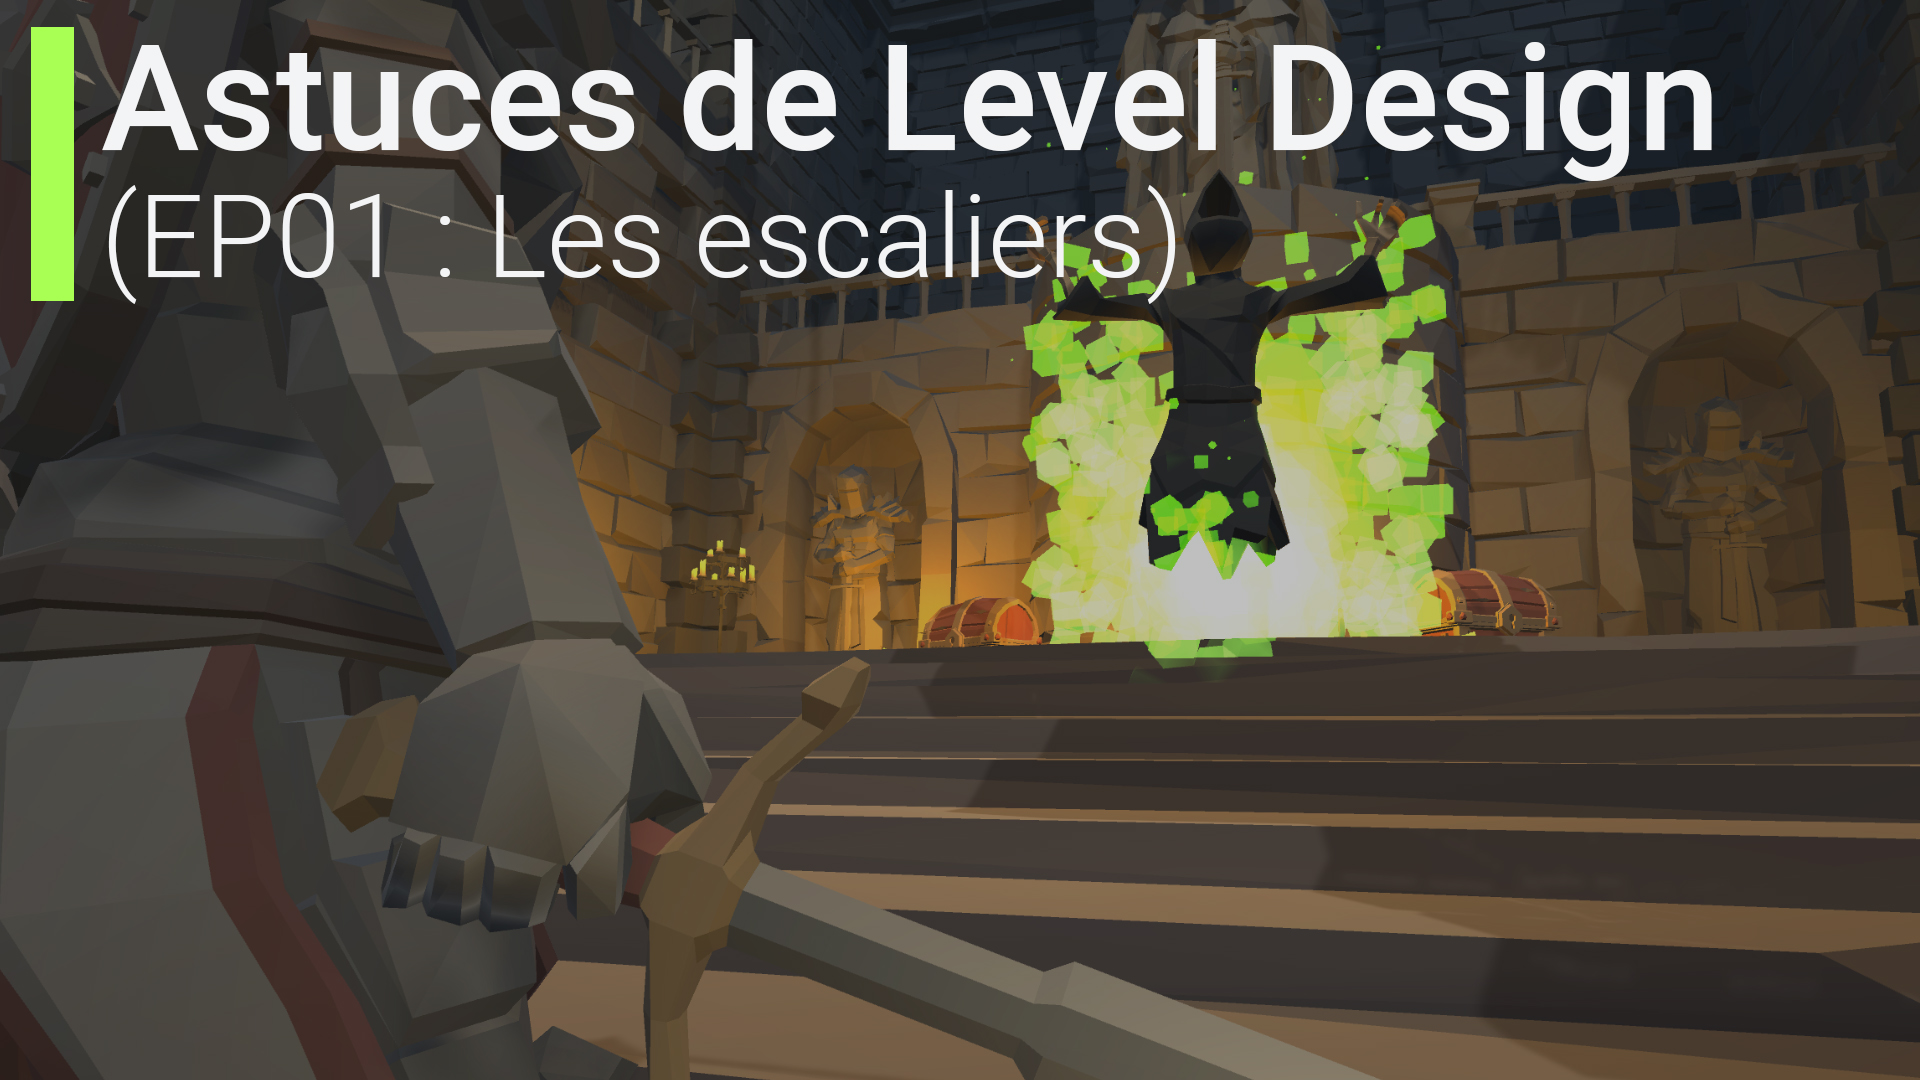 Les escaliers dans les jeux vidéo (Astuces level design)